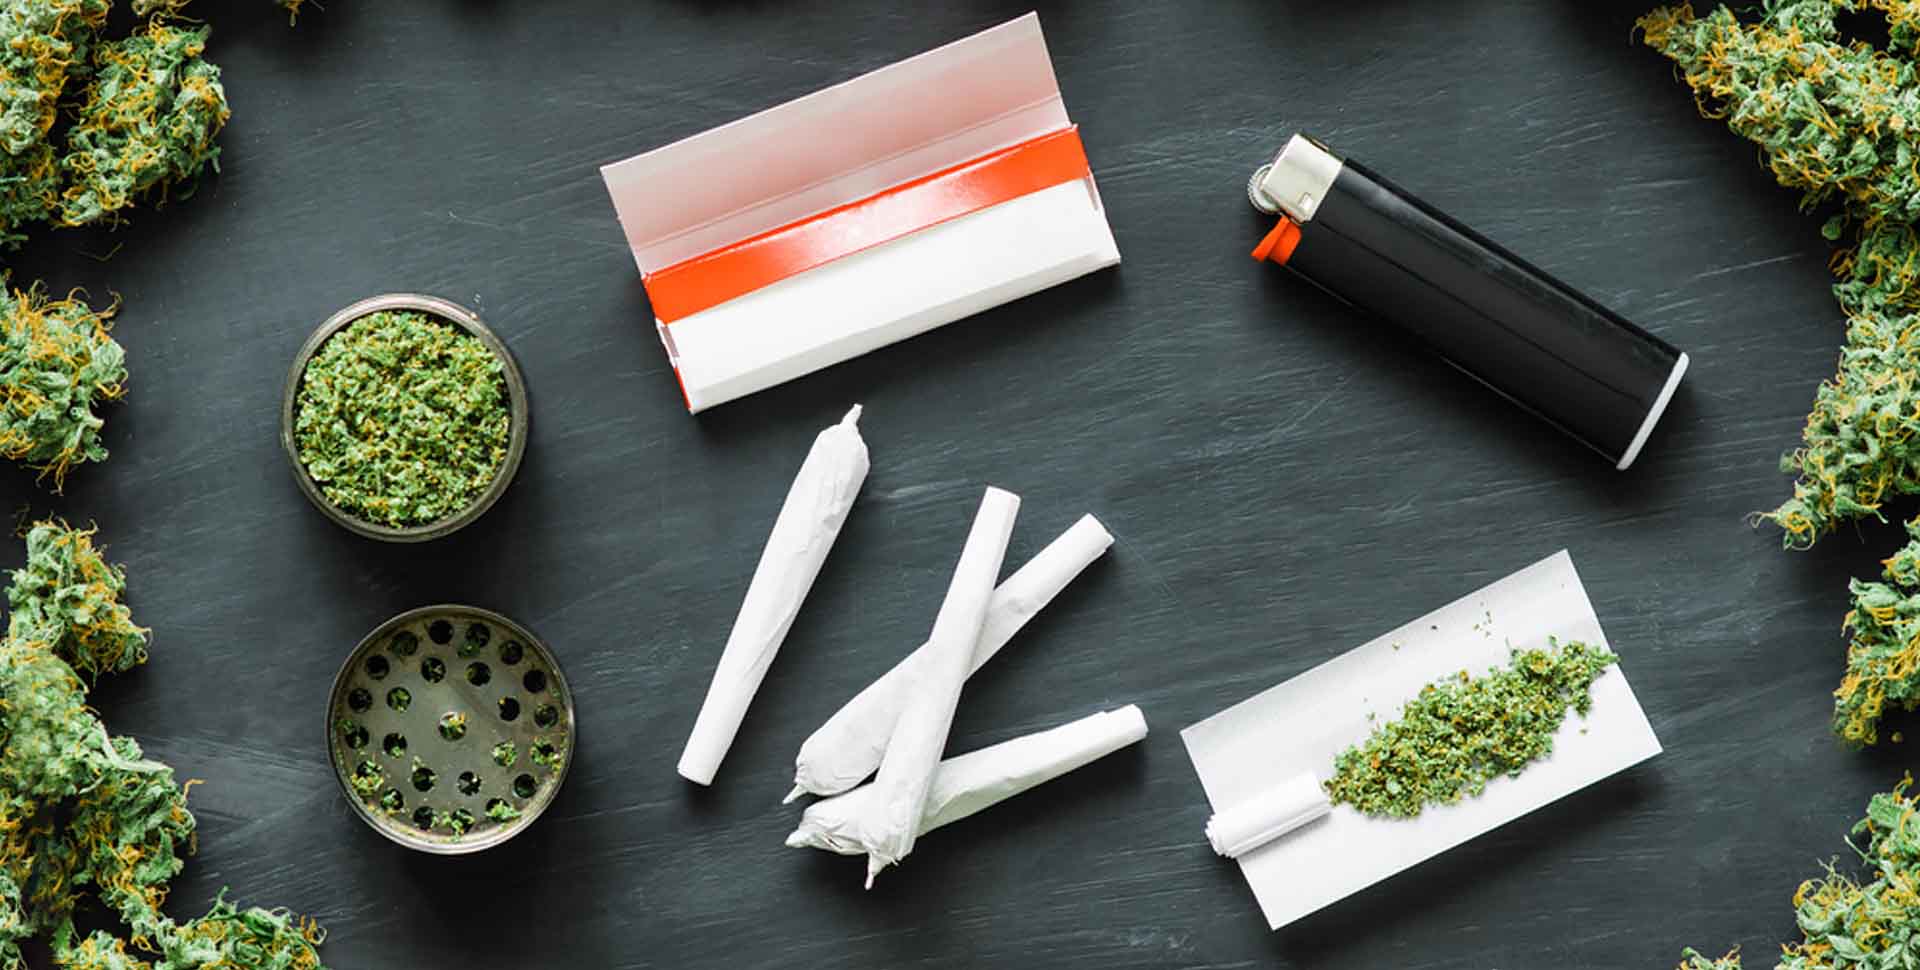 Fajčiarske potreby: drvička, papieriky, filtre, zapaľovač, ubalené jointy a kvety konope 